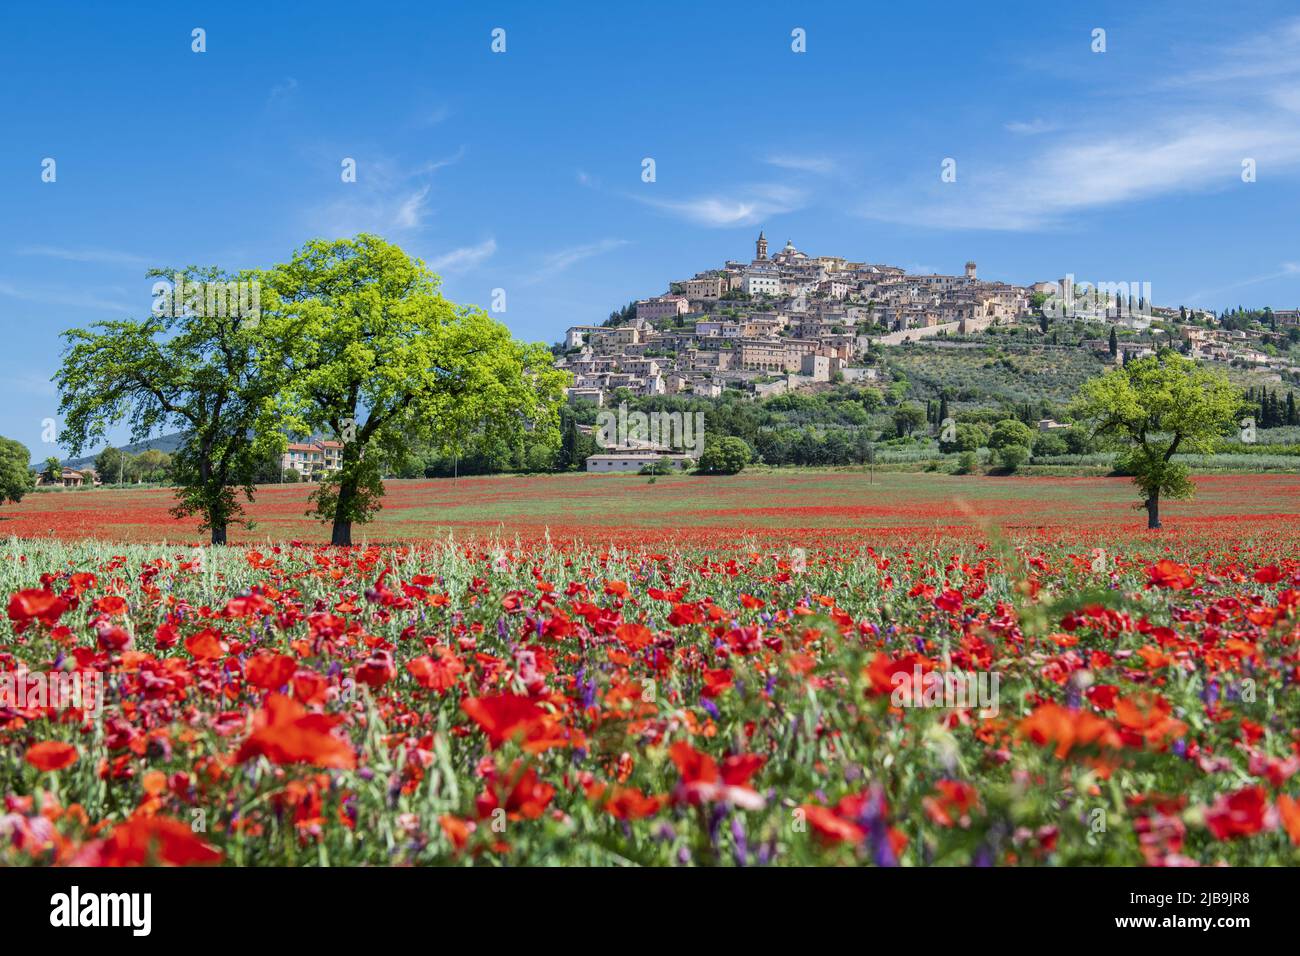 Trevi, Perugia, Umbrien, Italien. Foto des Trevi, der kleinen Stadt Umbrien, mit einem Teppich aus rotem Mohn im Frühling und einem großen Baum Stockfoto